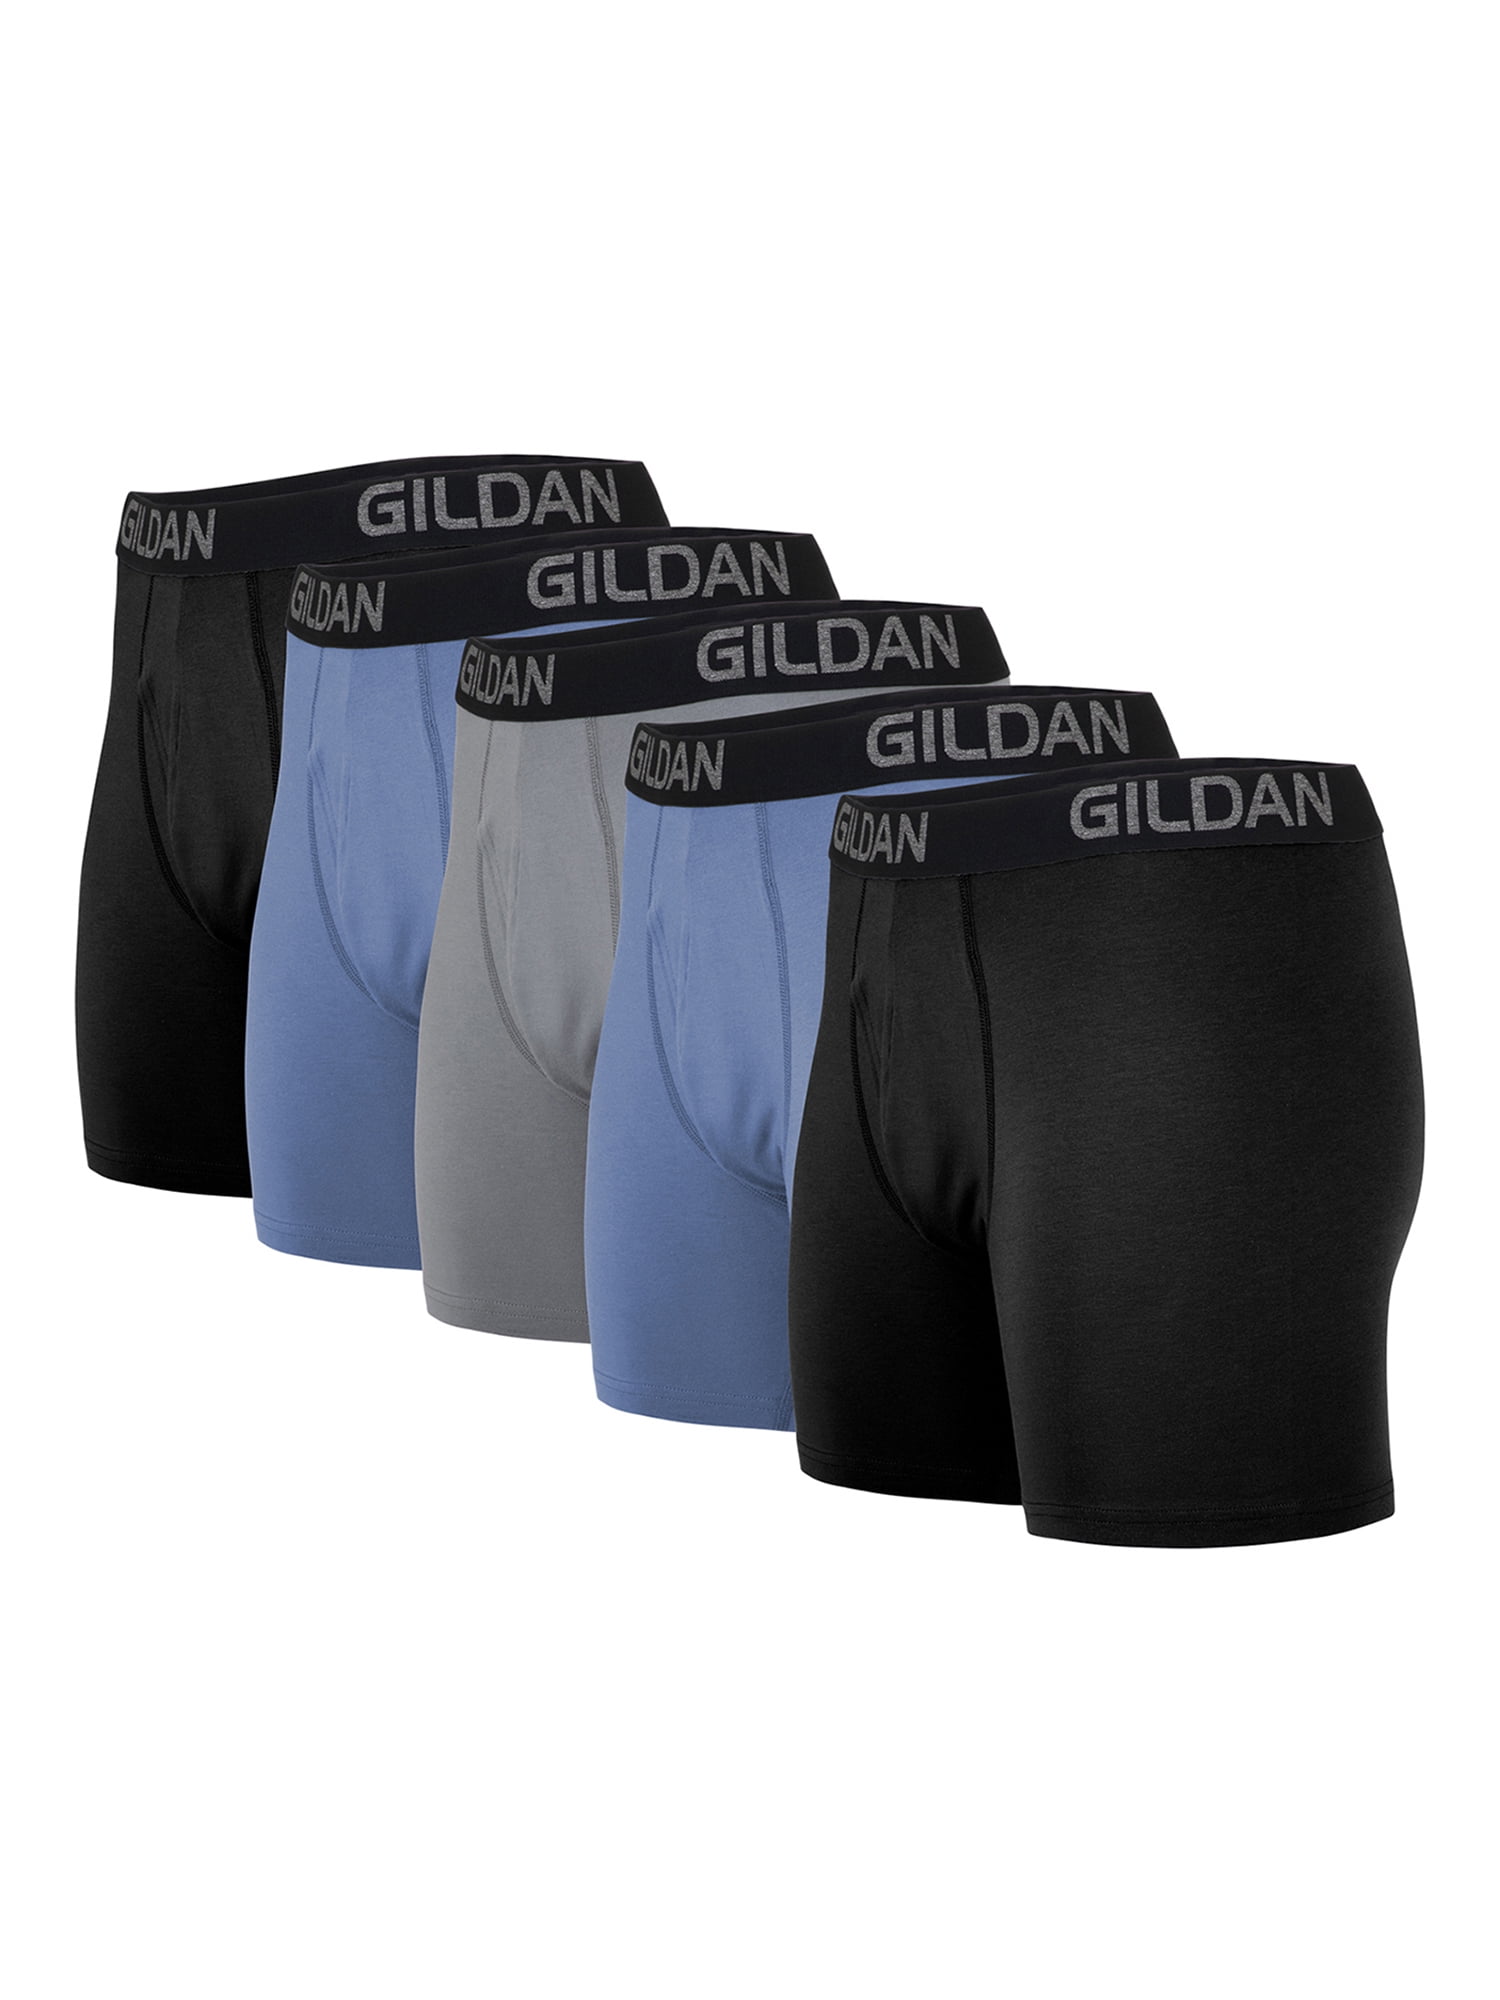 Details about   Disney Parks Men’s Boxer Shorts Underwear Cotton Size M Medium NEW Release Cute! 